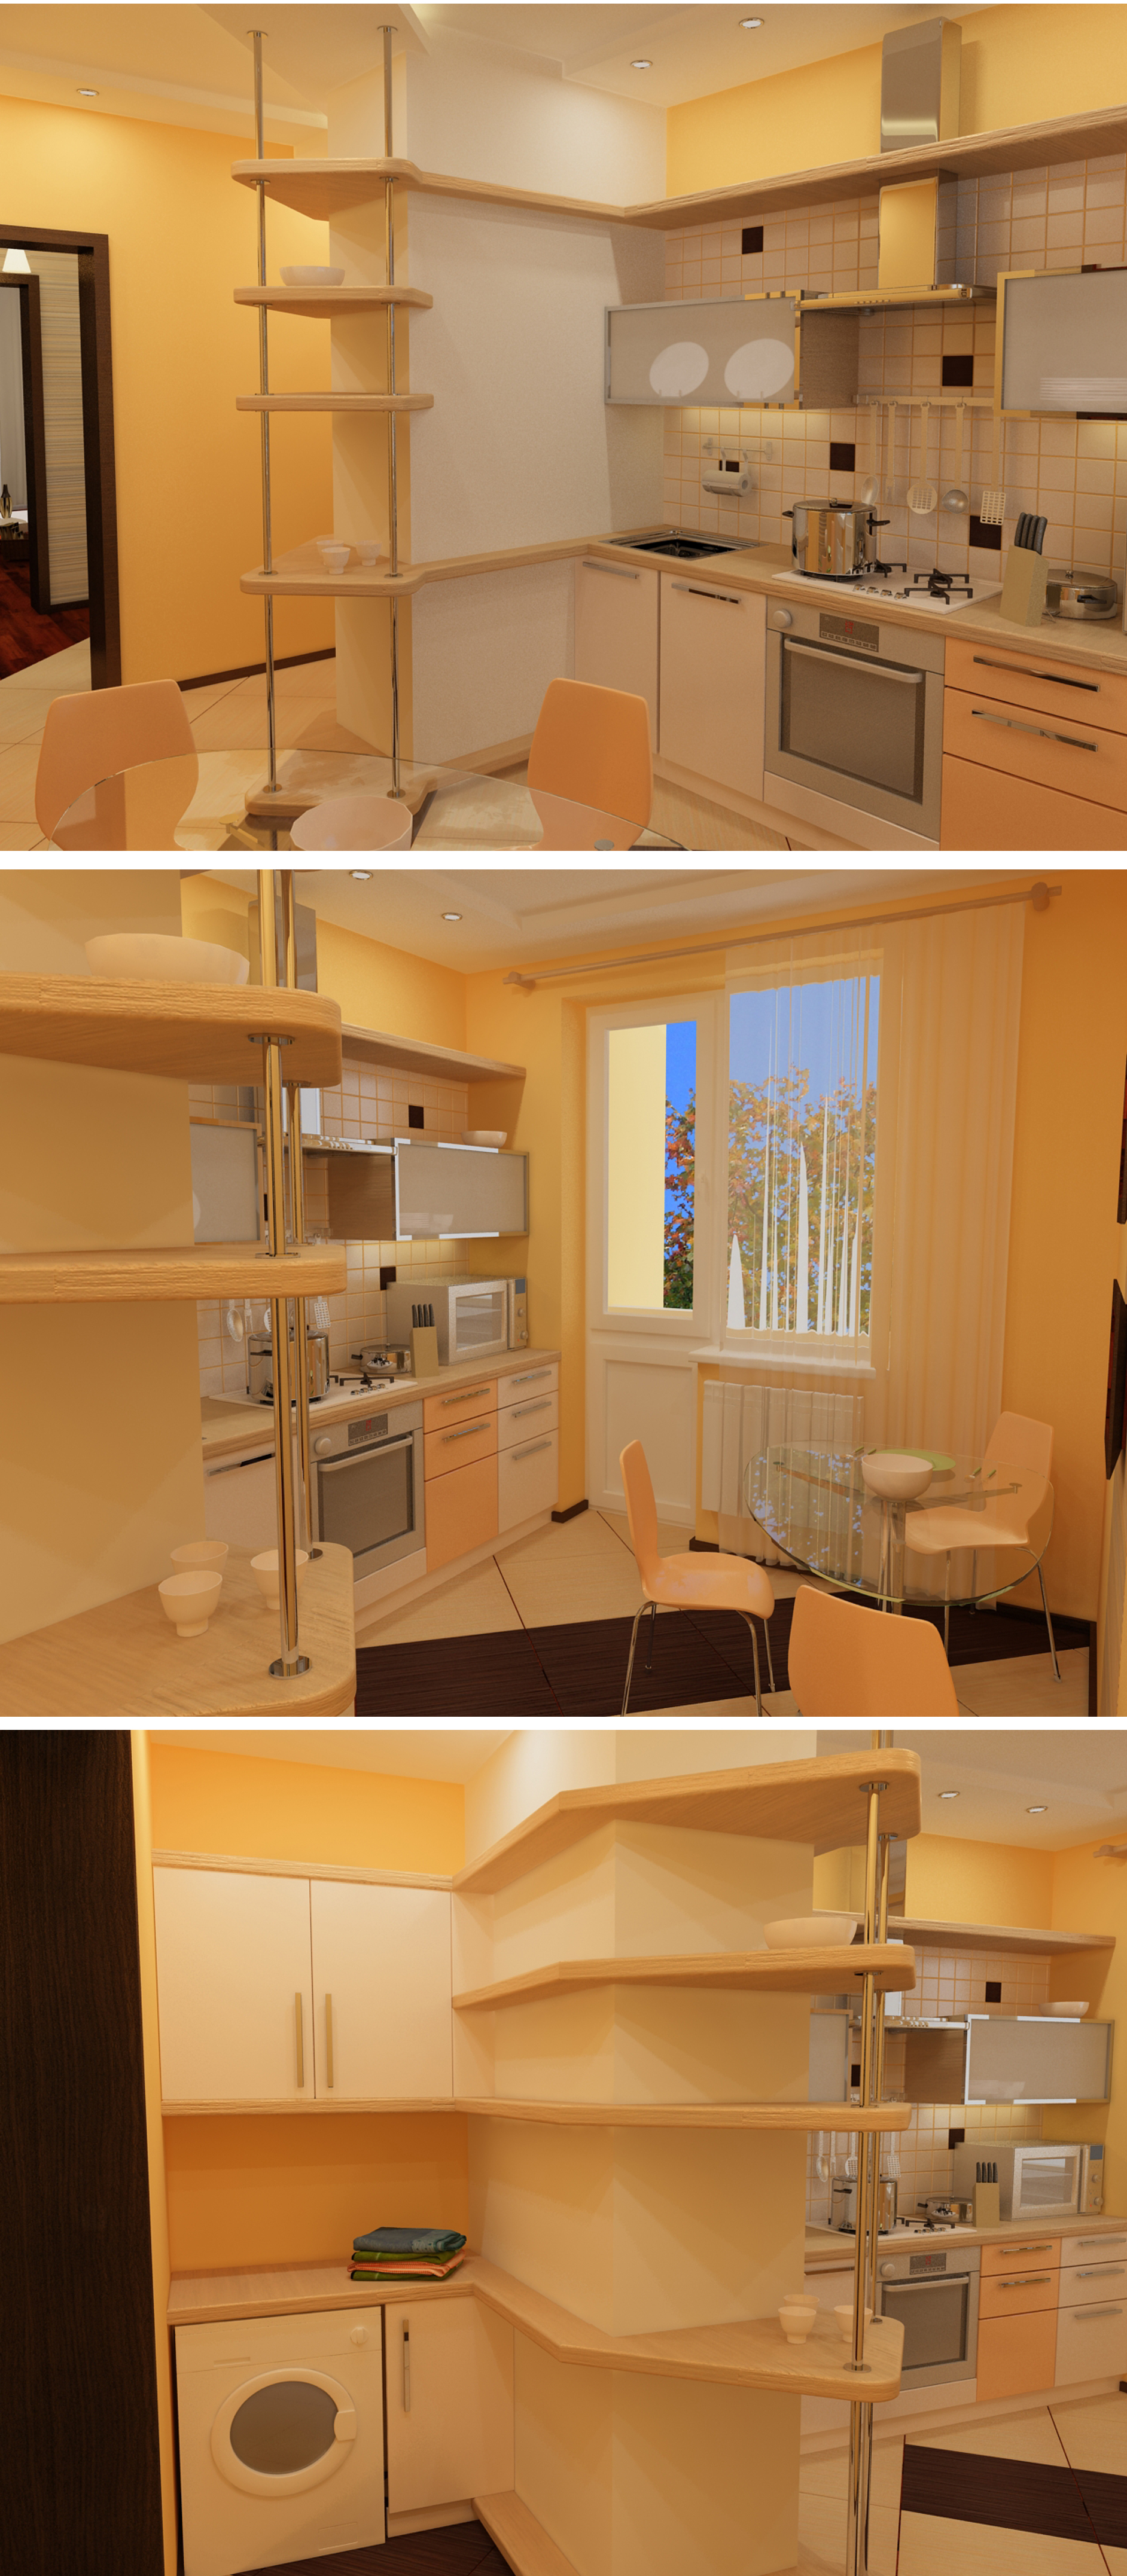 Кухня в 3-ех комнатной квартире в г. Кишиневе